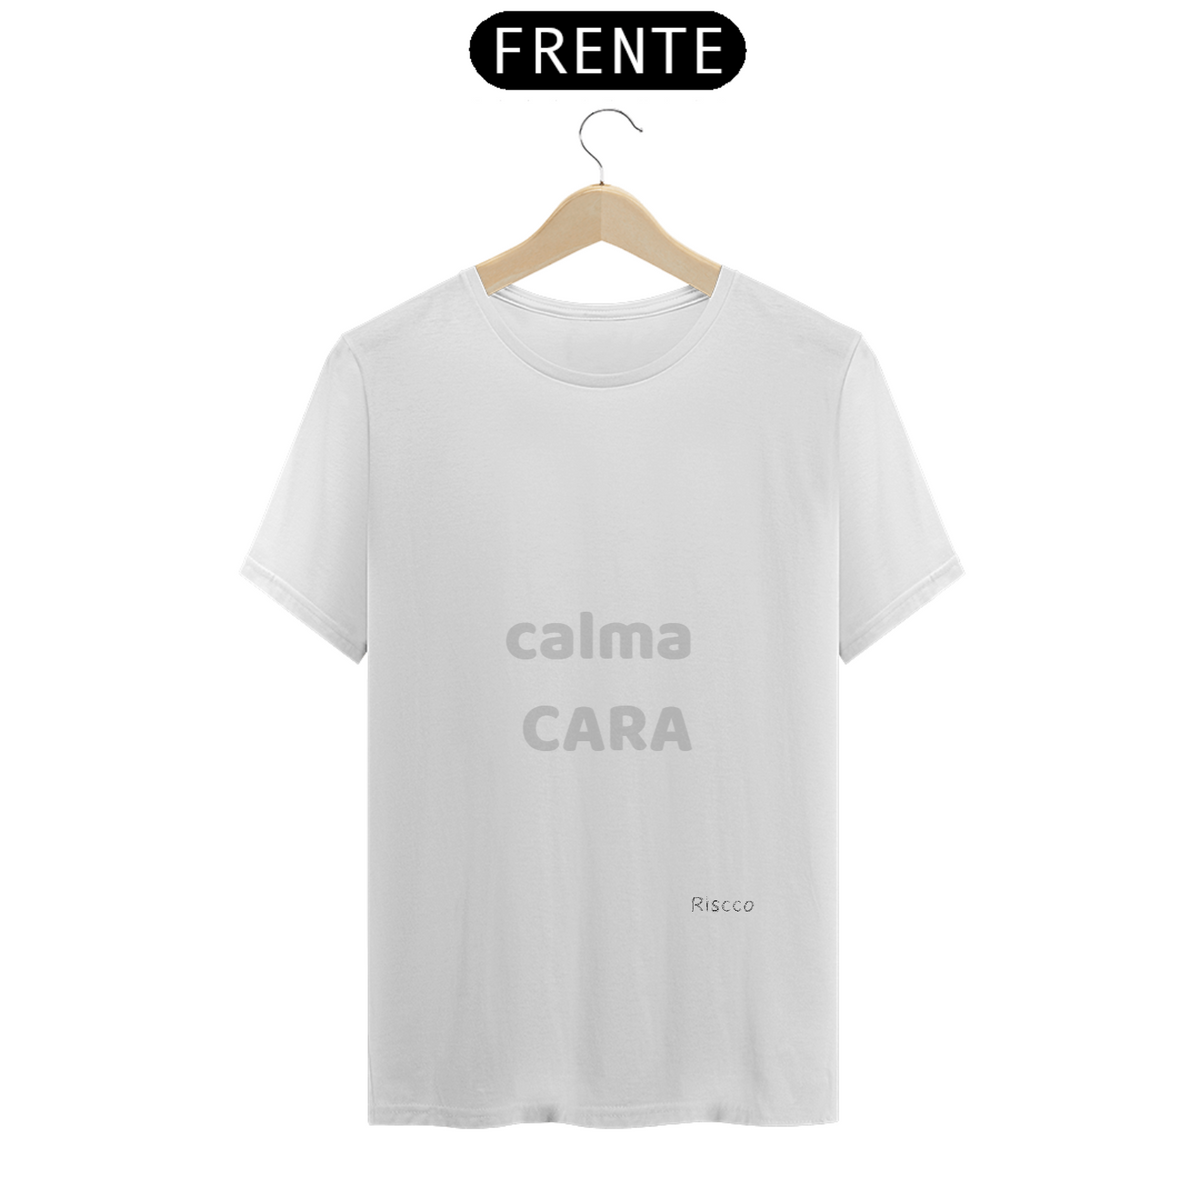 Nome do produto: CALMA CARA